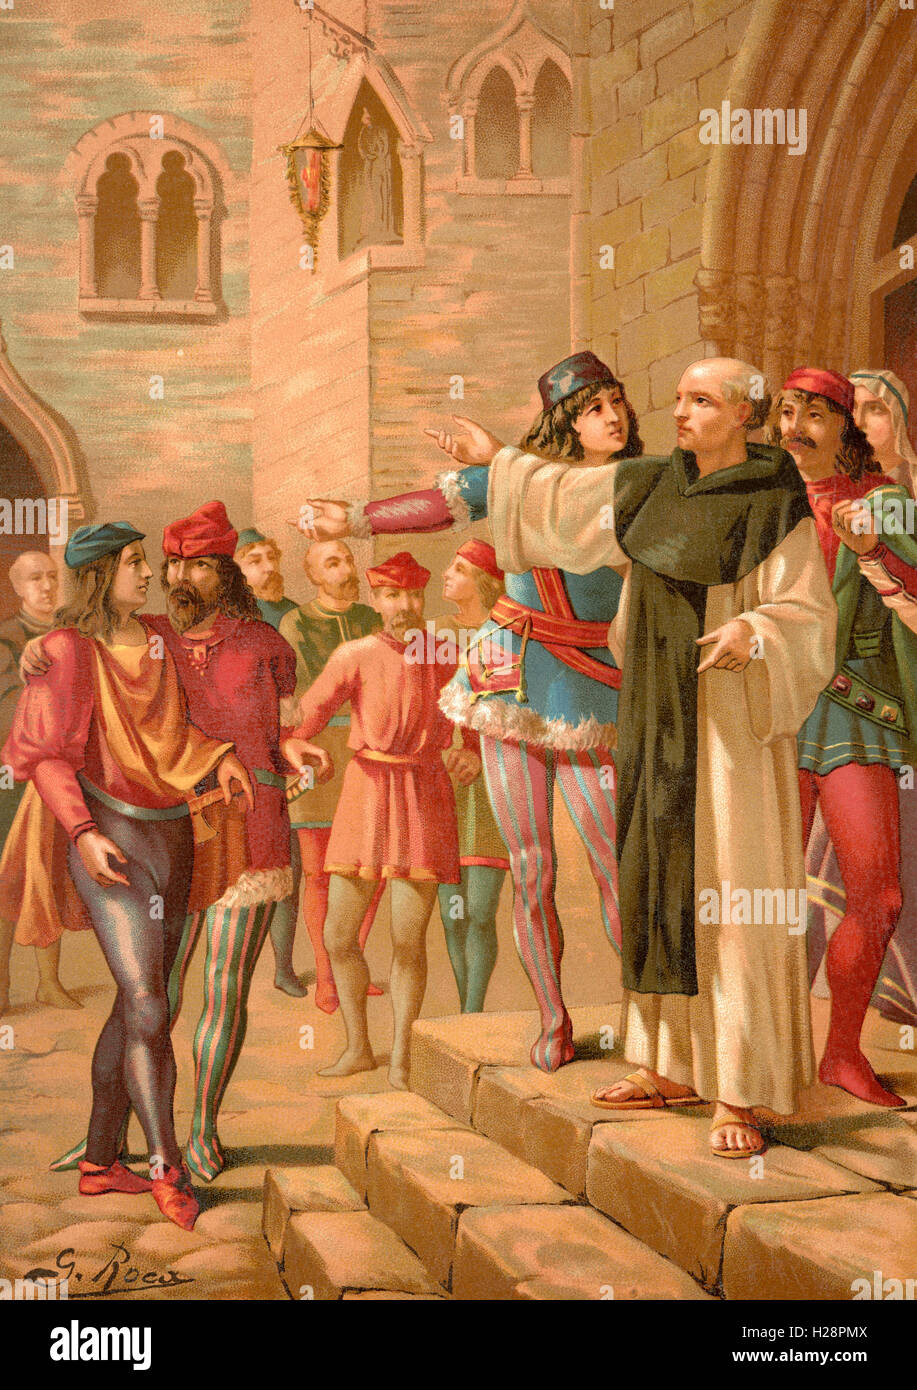 Savonarola Predigt in Florenz, Italien.  Girolamo Savonarola, 1452 – 1498.  Italienischer Dominikanermönch und Prediger tätig in Florenz der Renaissance. Stockfoto